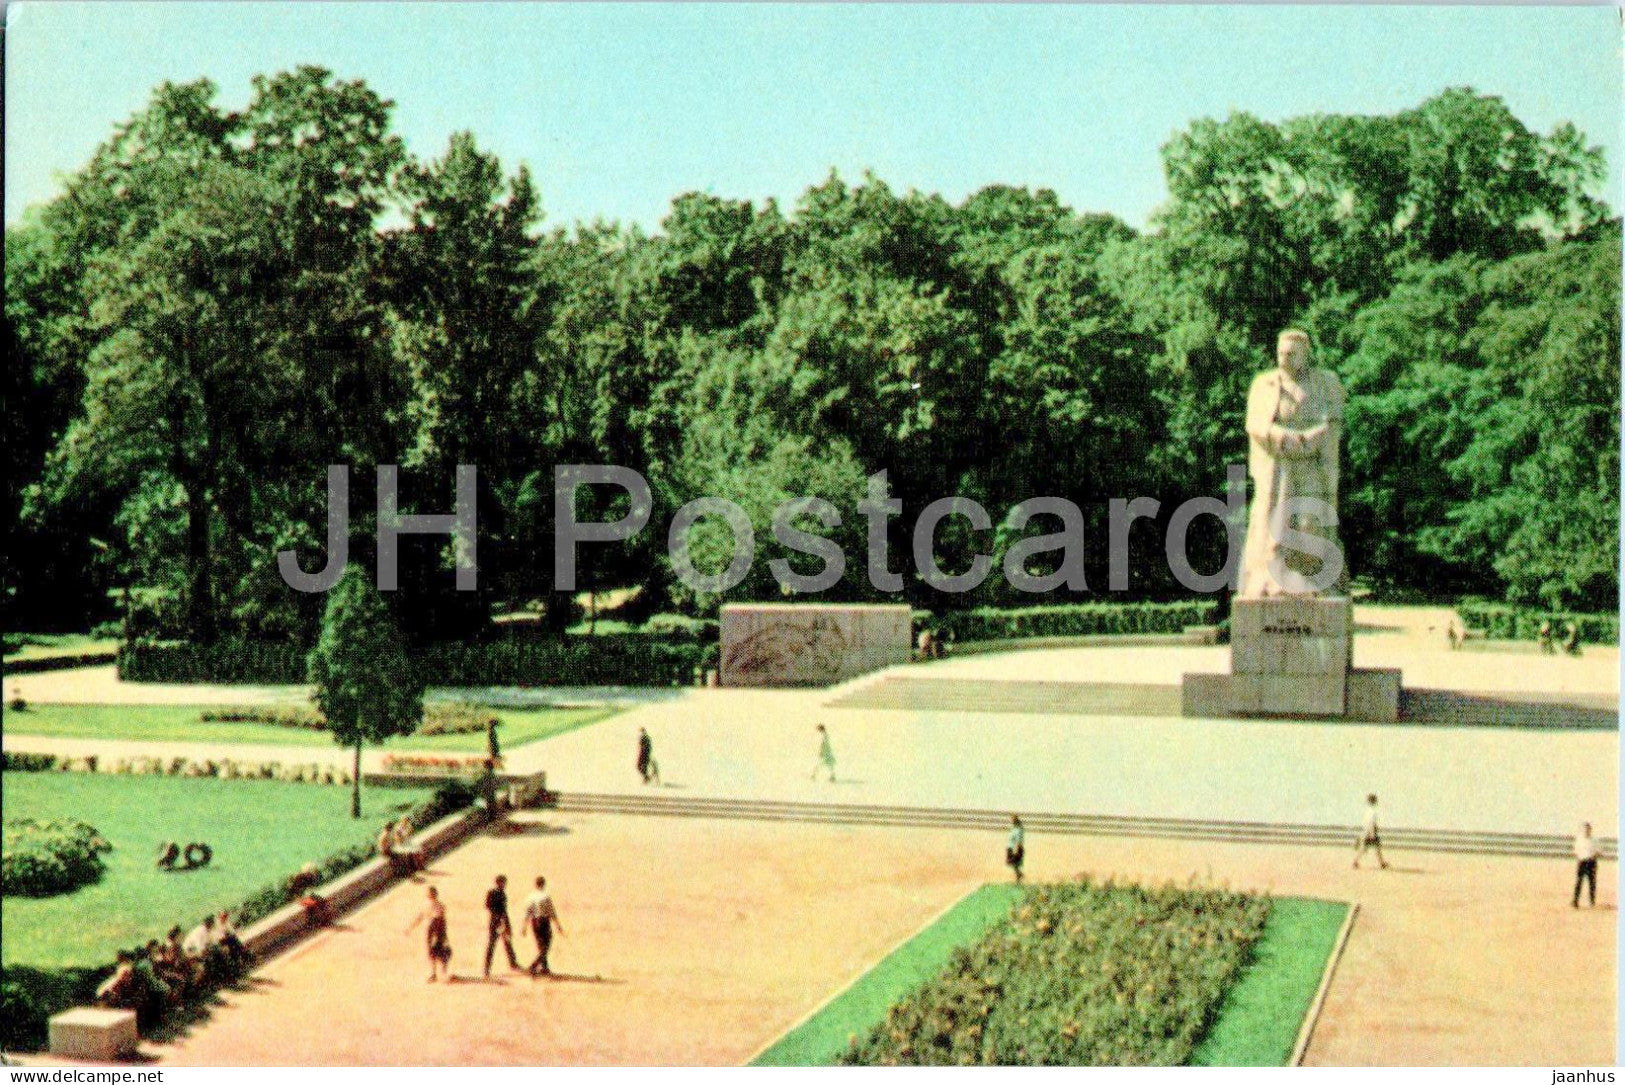 Lviv - Lvov - monument to Ukrainian poet Ivan Franko - 1968 - Ukraine USSR - unused - JH Postcards